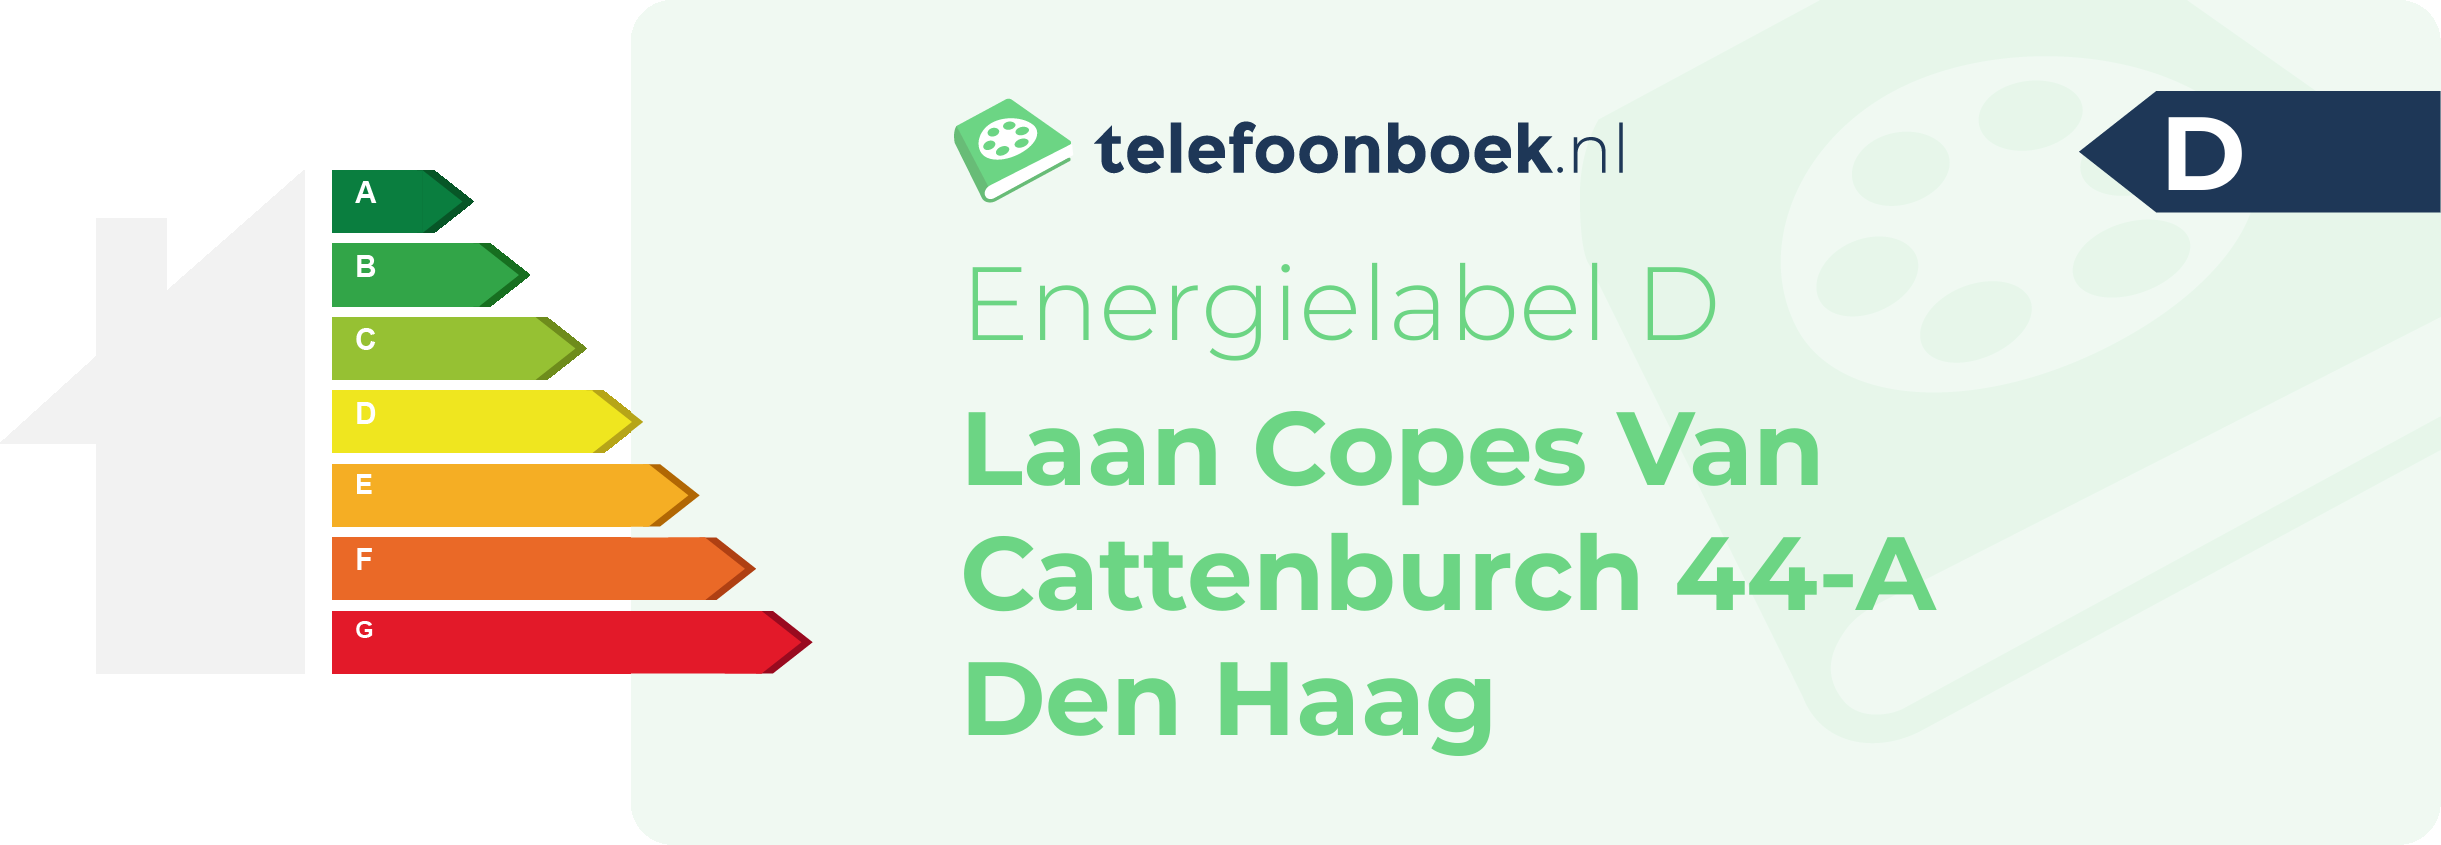 Energielabel Laan Copes Van Cattenburch 44-A Den Haag